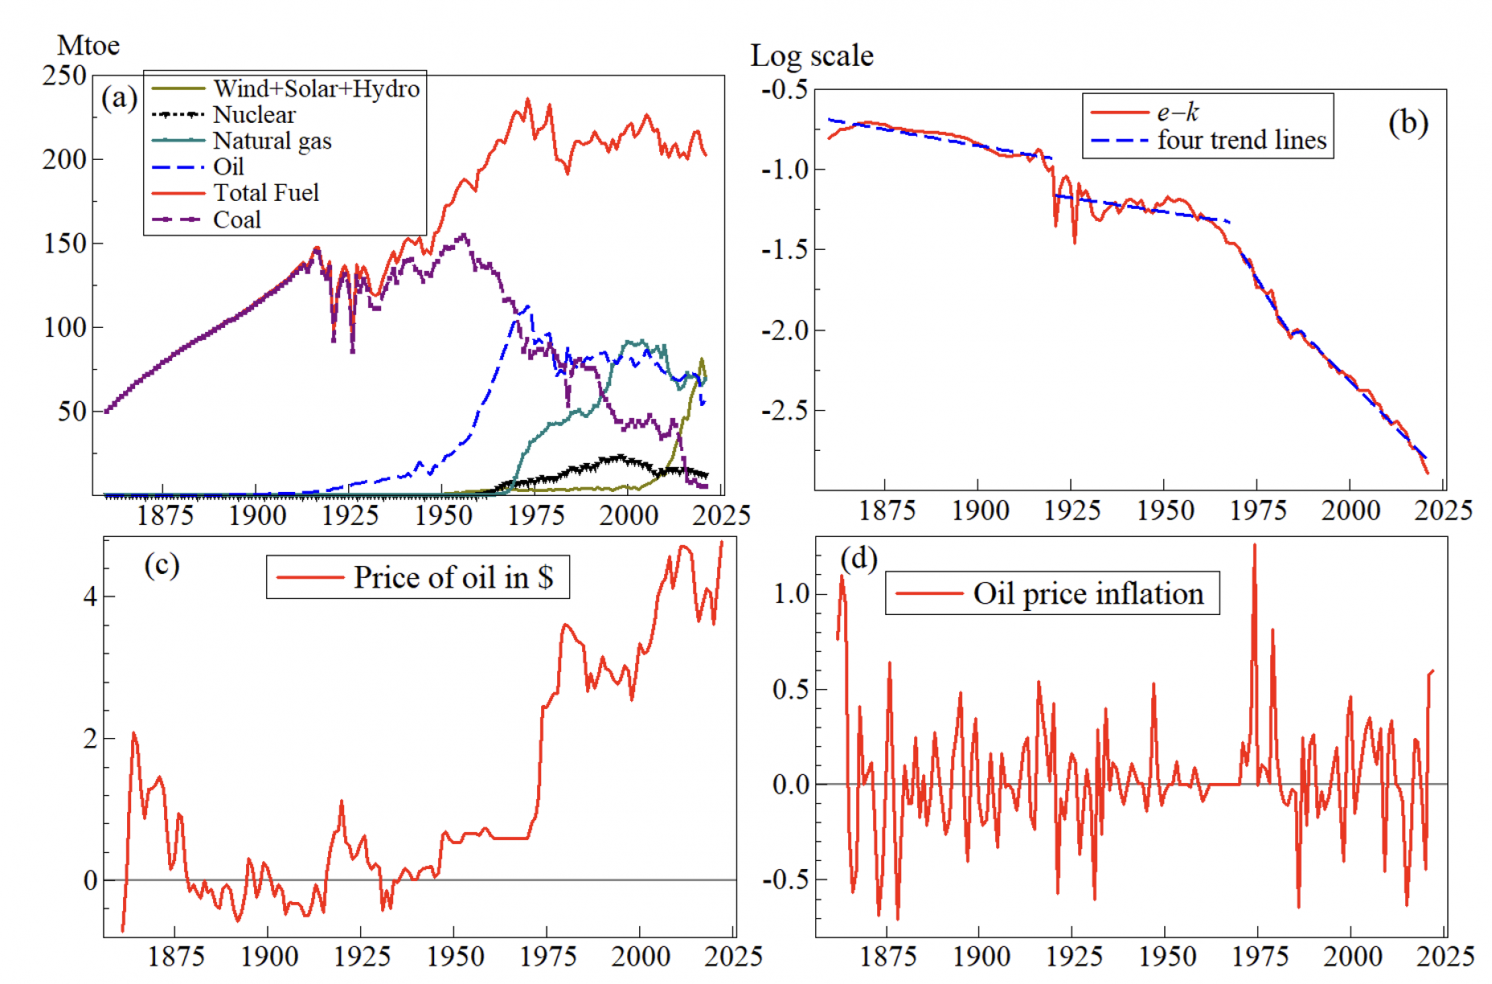 图4 (a)英国总能源使用(煤、石油、天然气、核能、风能、太阳能和水力发电的总和(均为百万吨石油当量，或Mtoe);(b)单位资本能量对数，有四个分时期趋势;(c)石油价格记录(以美元为单位);(d) 1860-2021年的石油价格通胀。